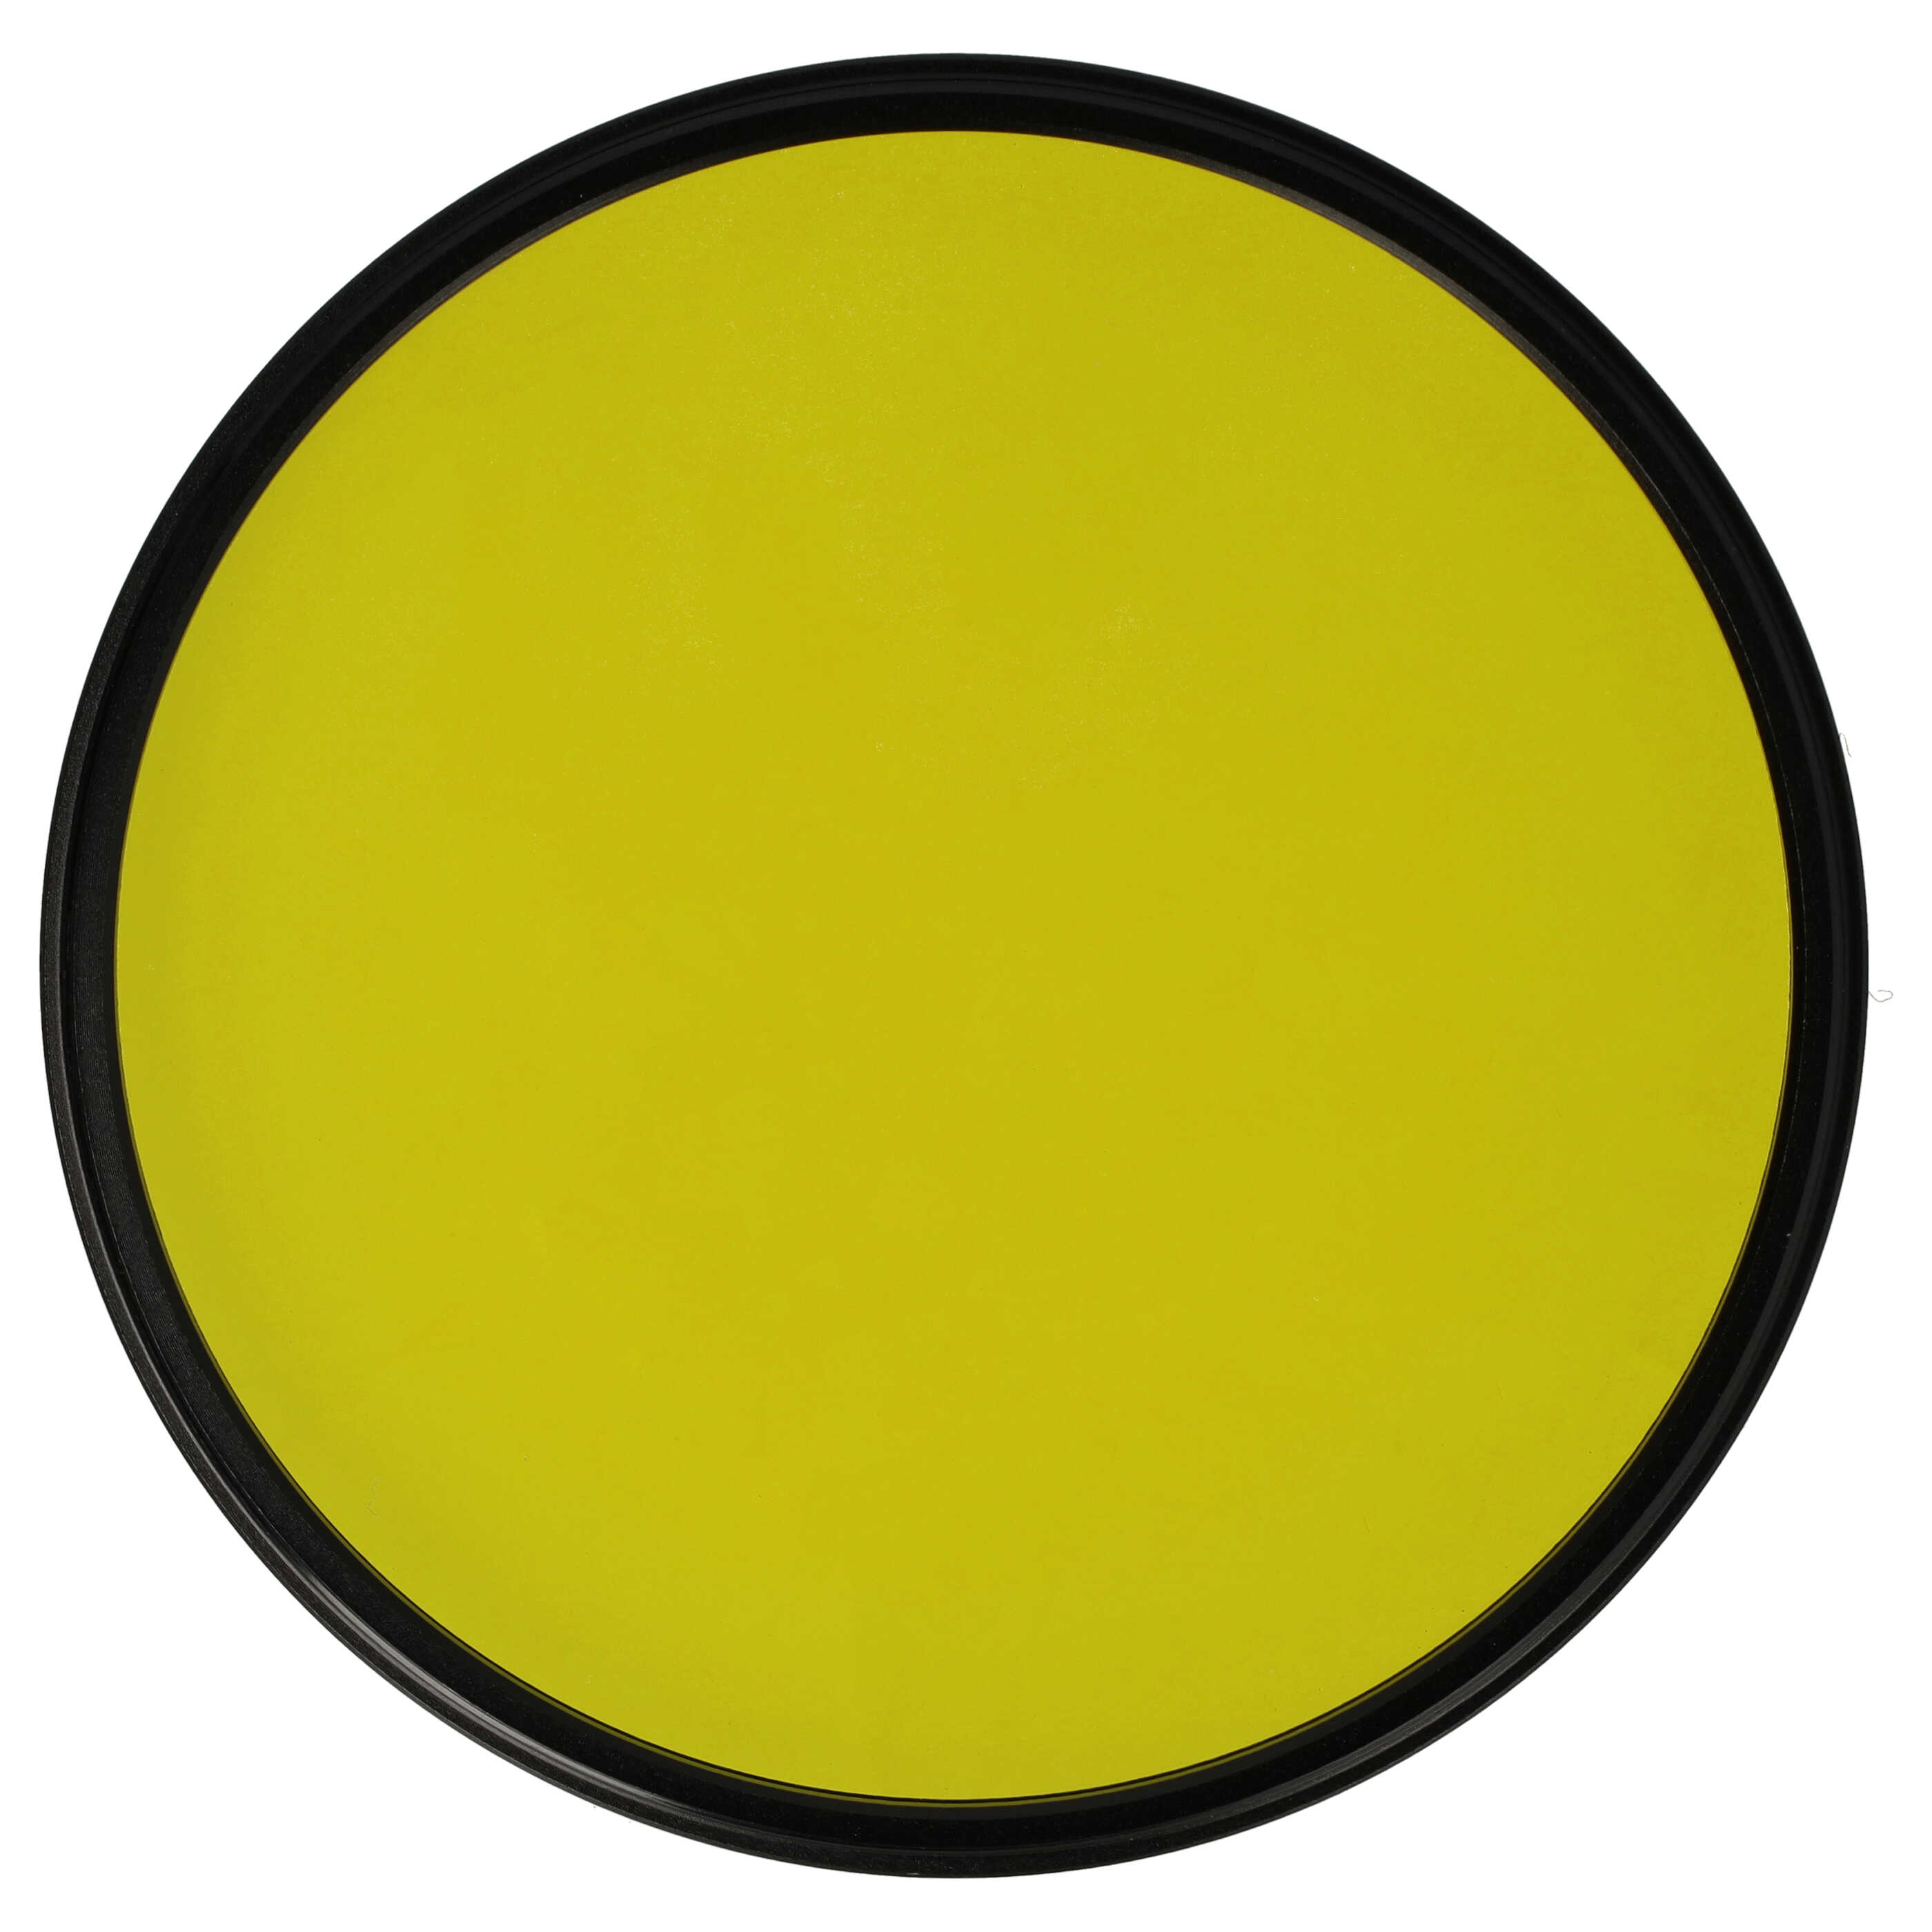 Filtr fotograficzny na obiektywy z gwintem 82 mm - filtr żółty